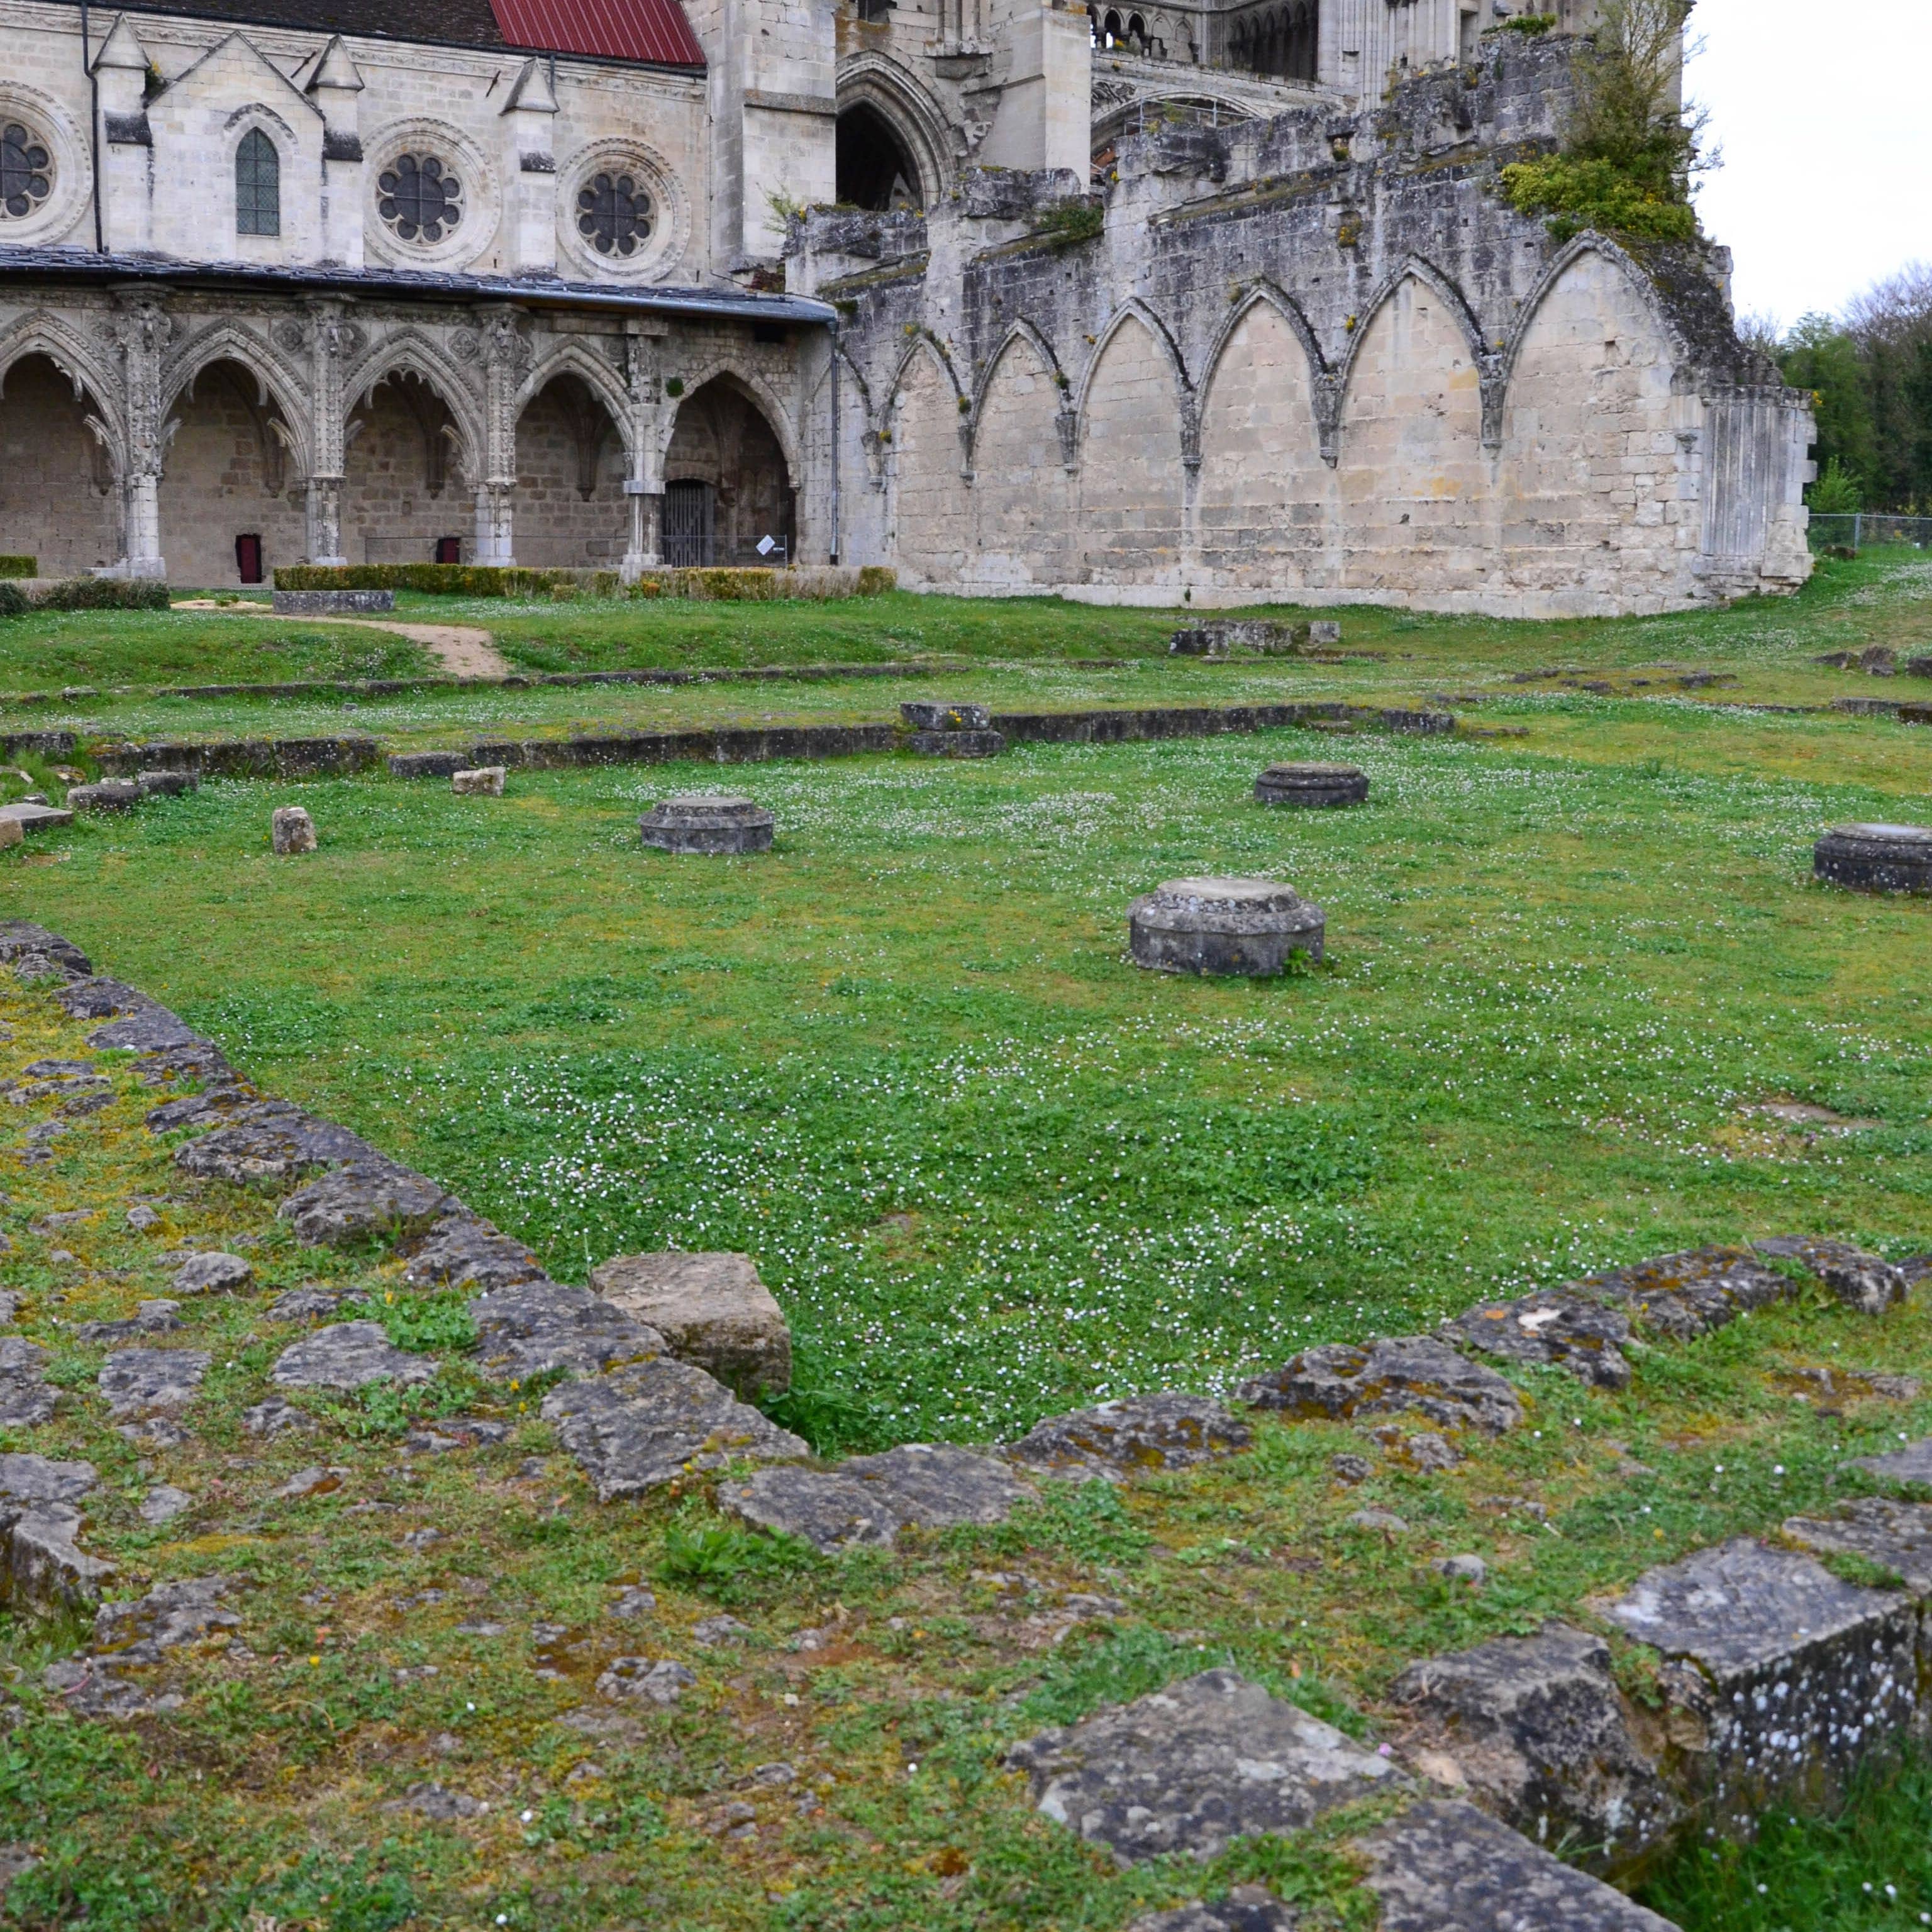 Salle capitulaire, abbaye Saint-Jean-des-Vignes, Soissons